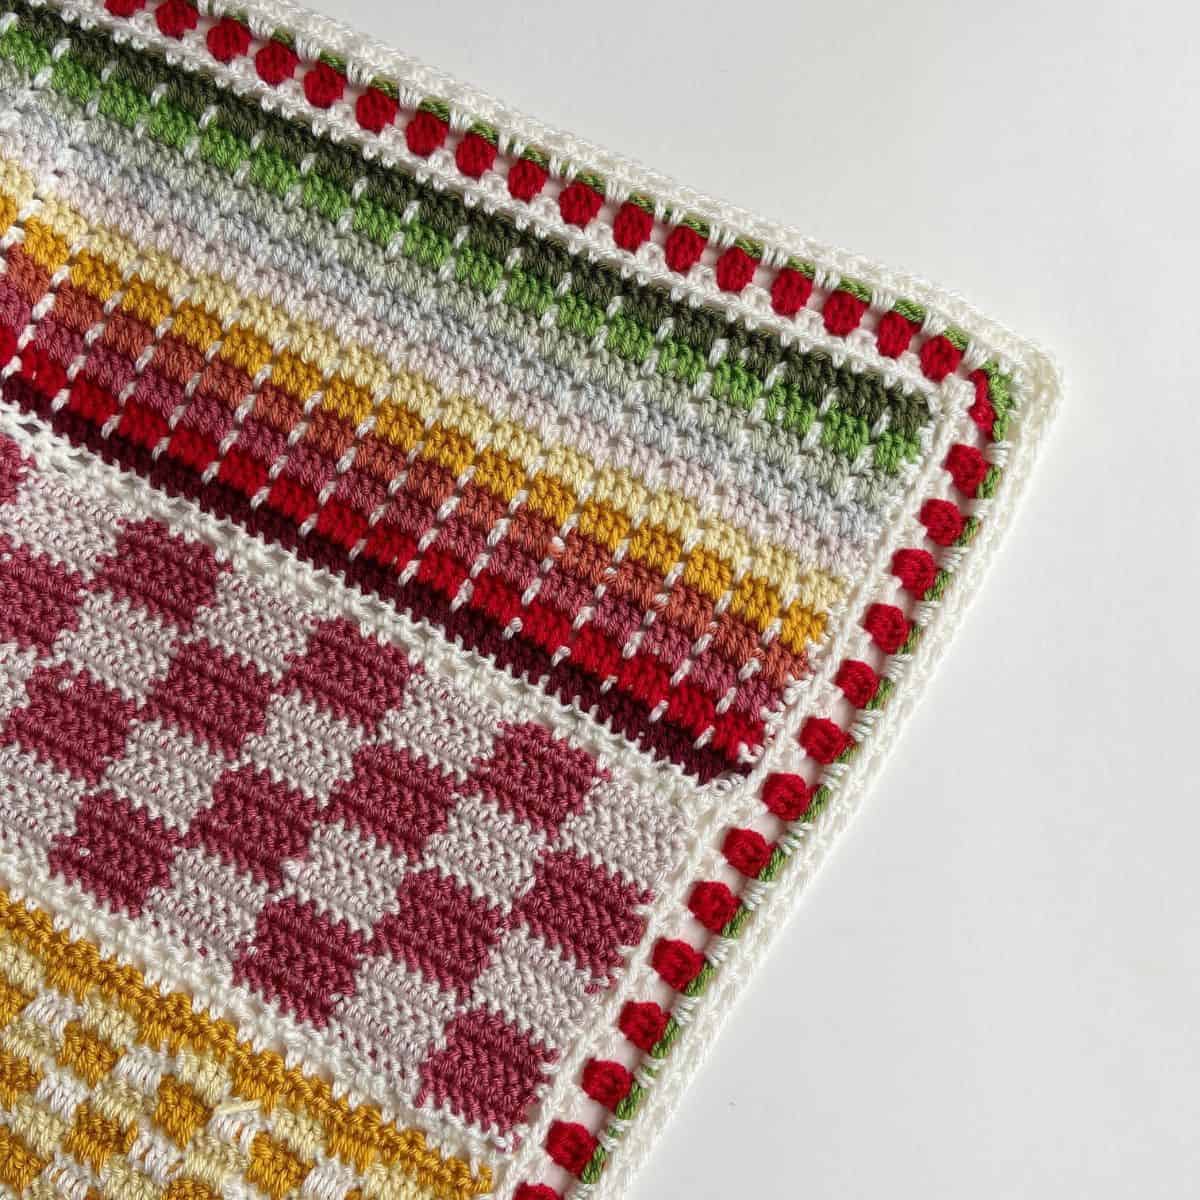 Strawberry crochet stitch blanket border.